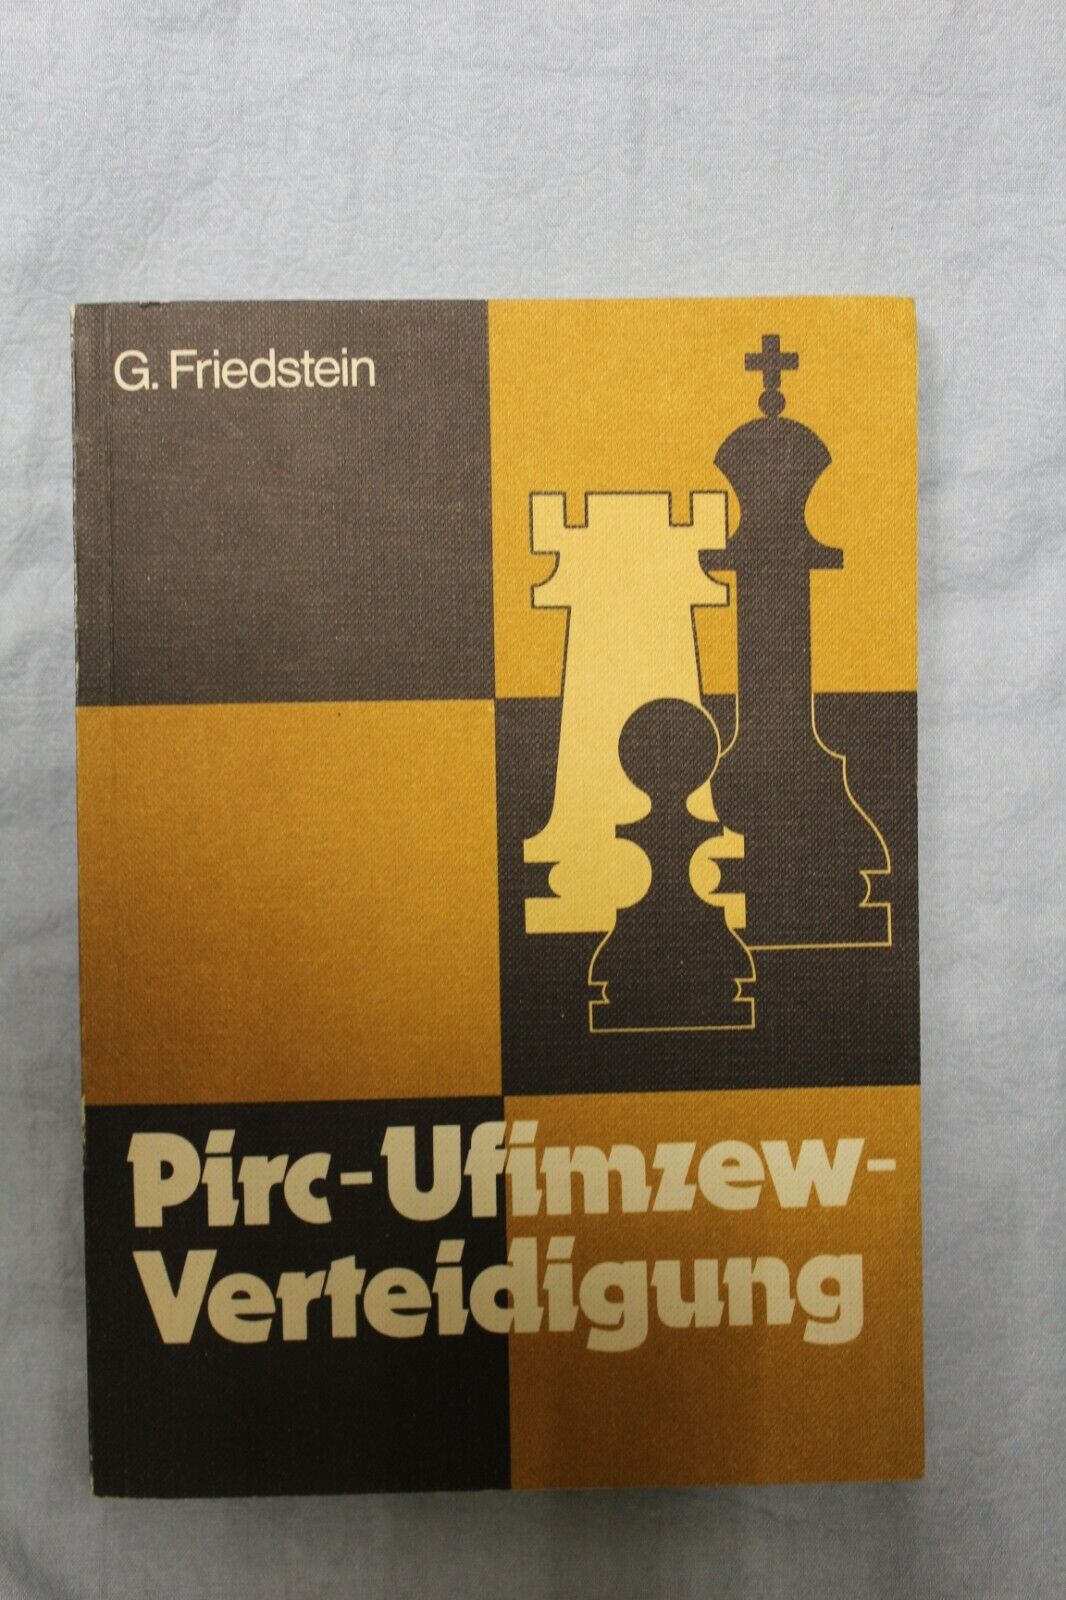 11120.Chess Book: signed Friedstein for Karpov, Pirc-Ufimzew Verteidingung, 1977